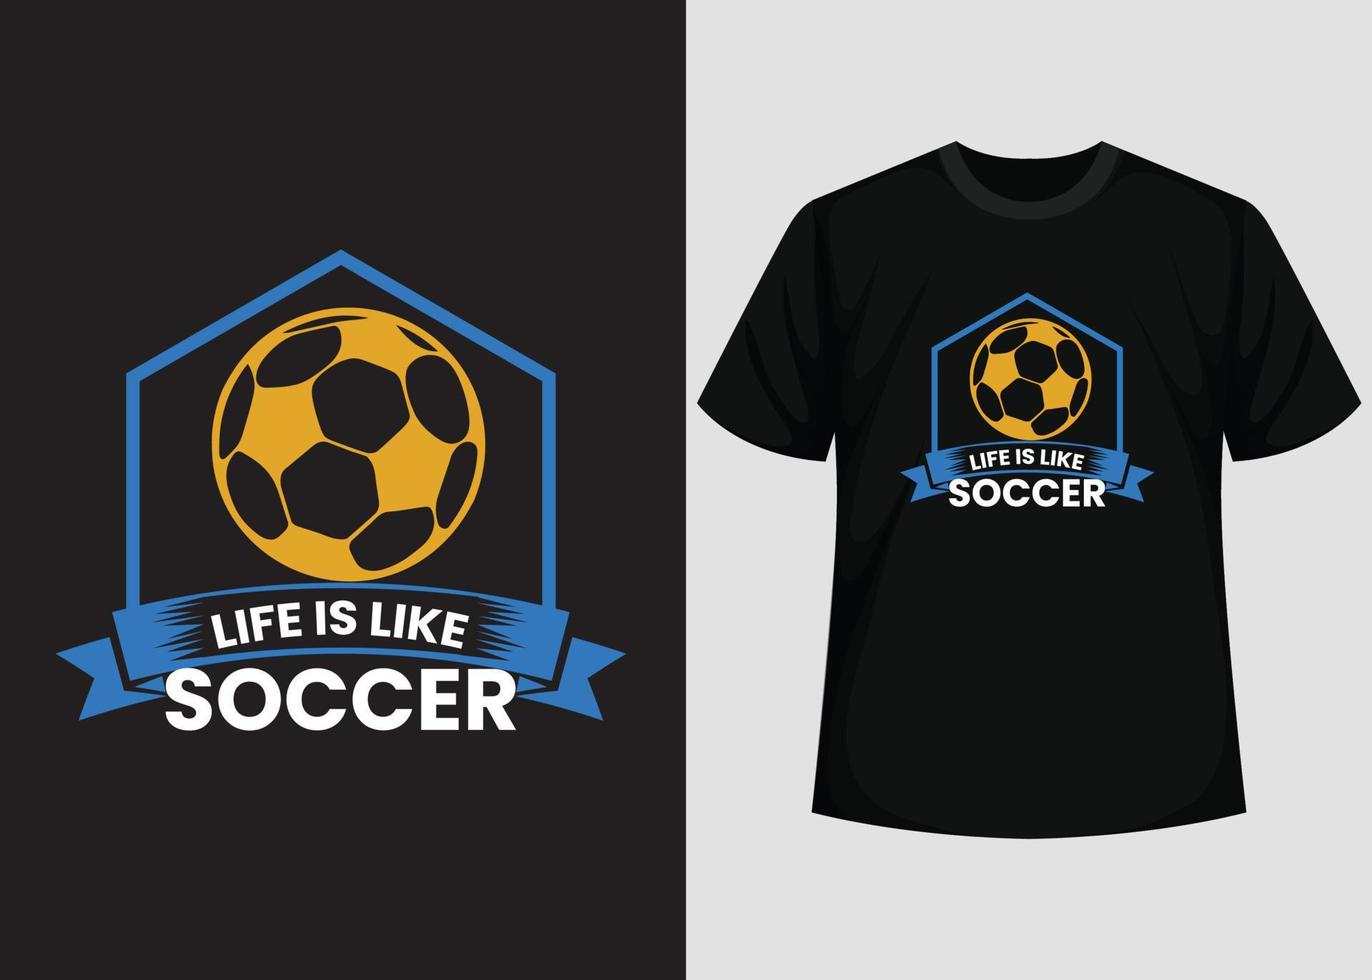 Das Leben ist wie Fußball-T-Shirt-Design. bestes glückliches Fußballtag-T-Shirt-Design. T-Shirt-Design, Typografie-T-Shirt, Vektor- und Illustrationselemente für druckbare Produkte. vektor